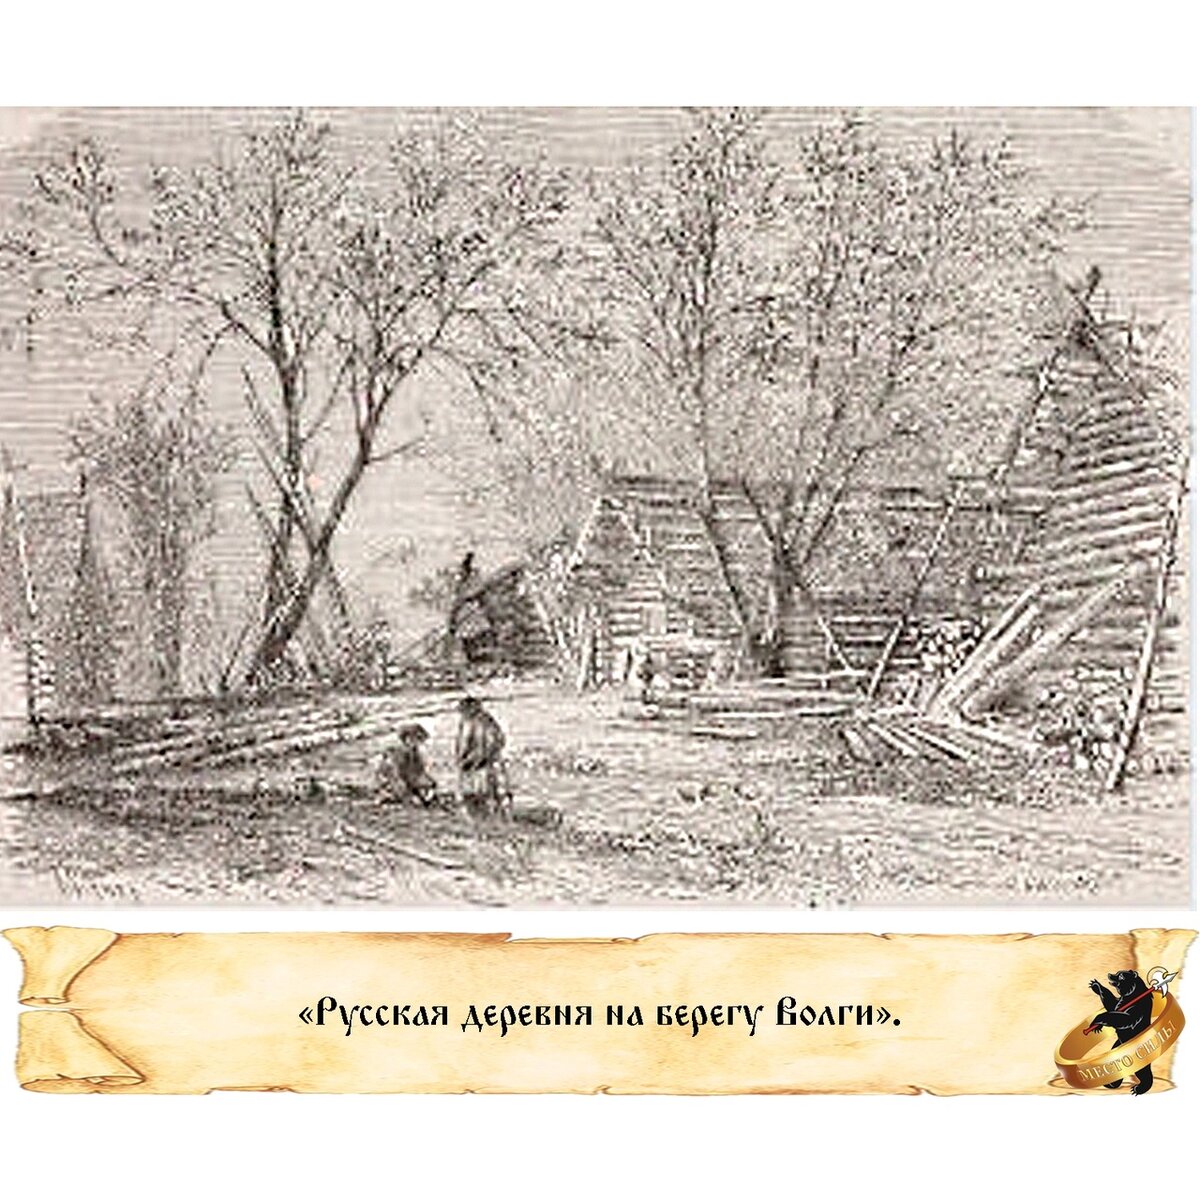 Вы знаете, откуда пошло выражение "развесистая клюква"? Благодаря отцу нашему Александру Дюма.  В 1858-1859 годах знаменитый писатель путешествовал по России.